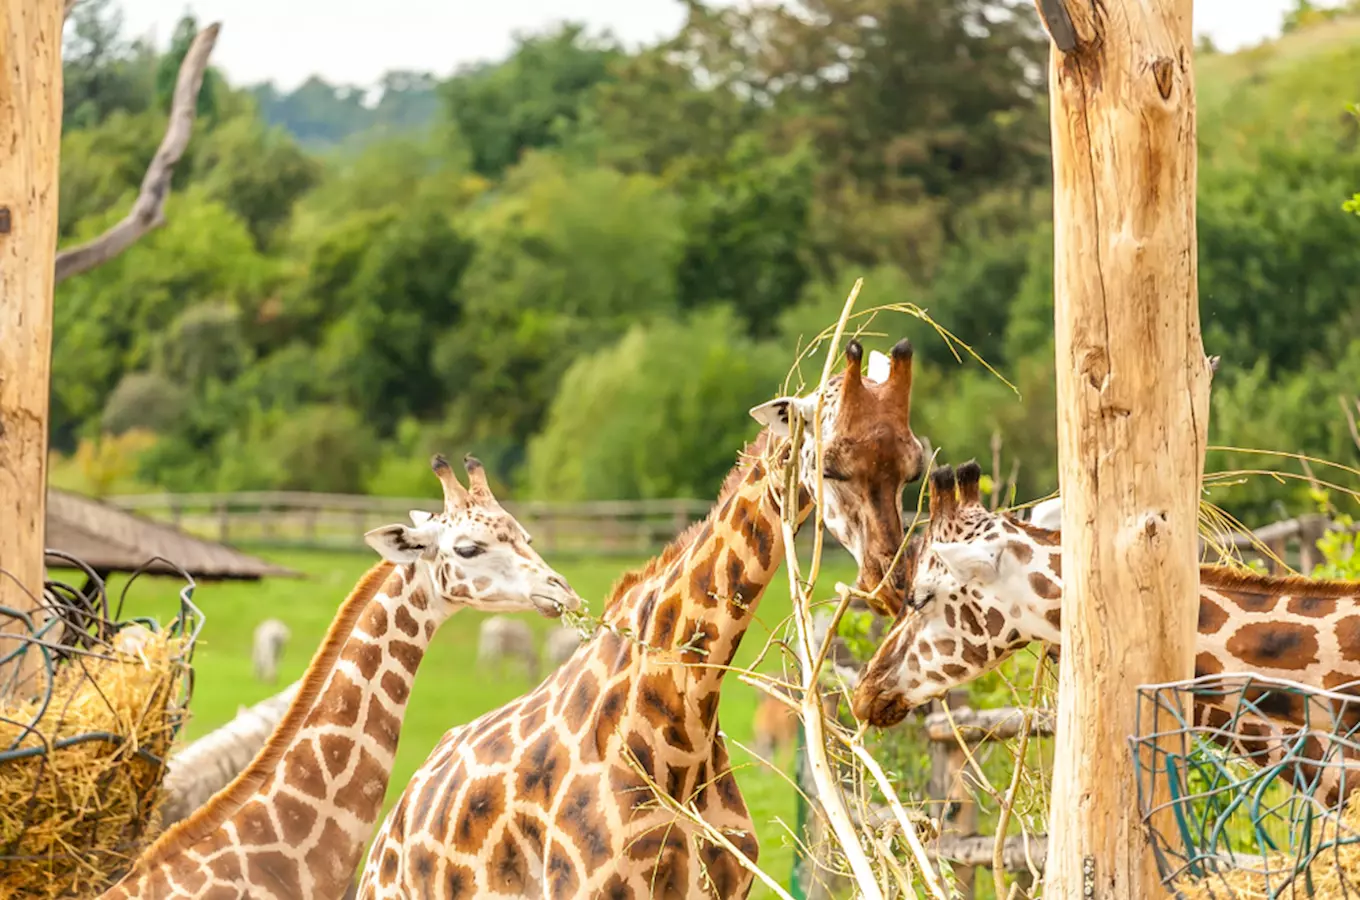 Oslavte Světový den žiraf návštěvou zoologické zahrady